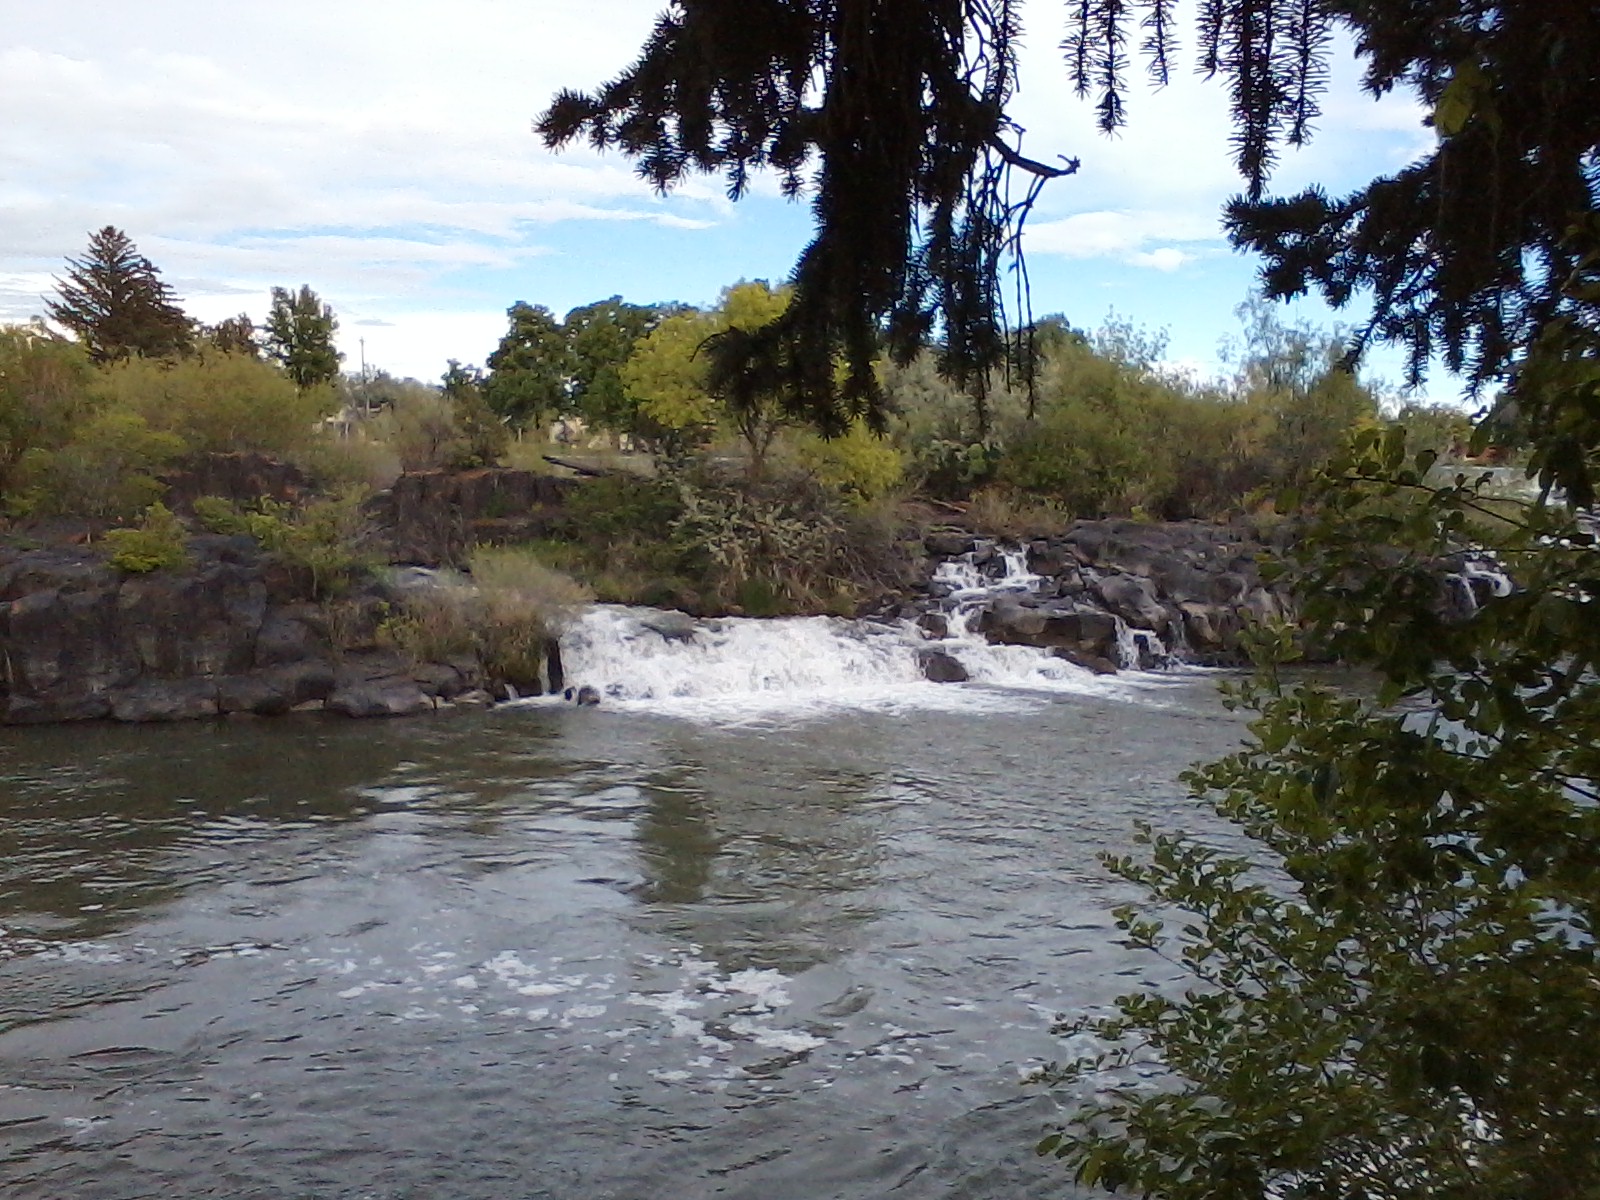 Idaho Falls